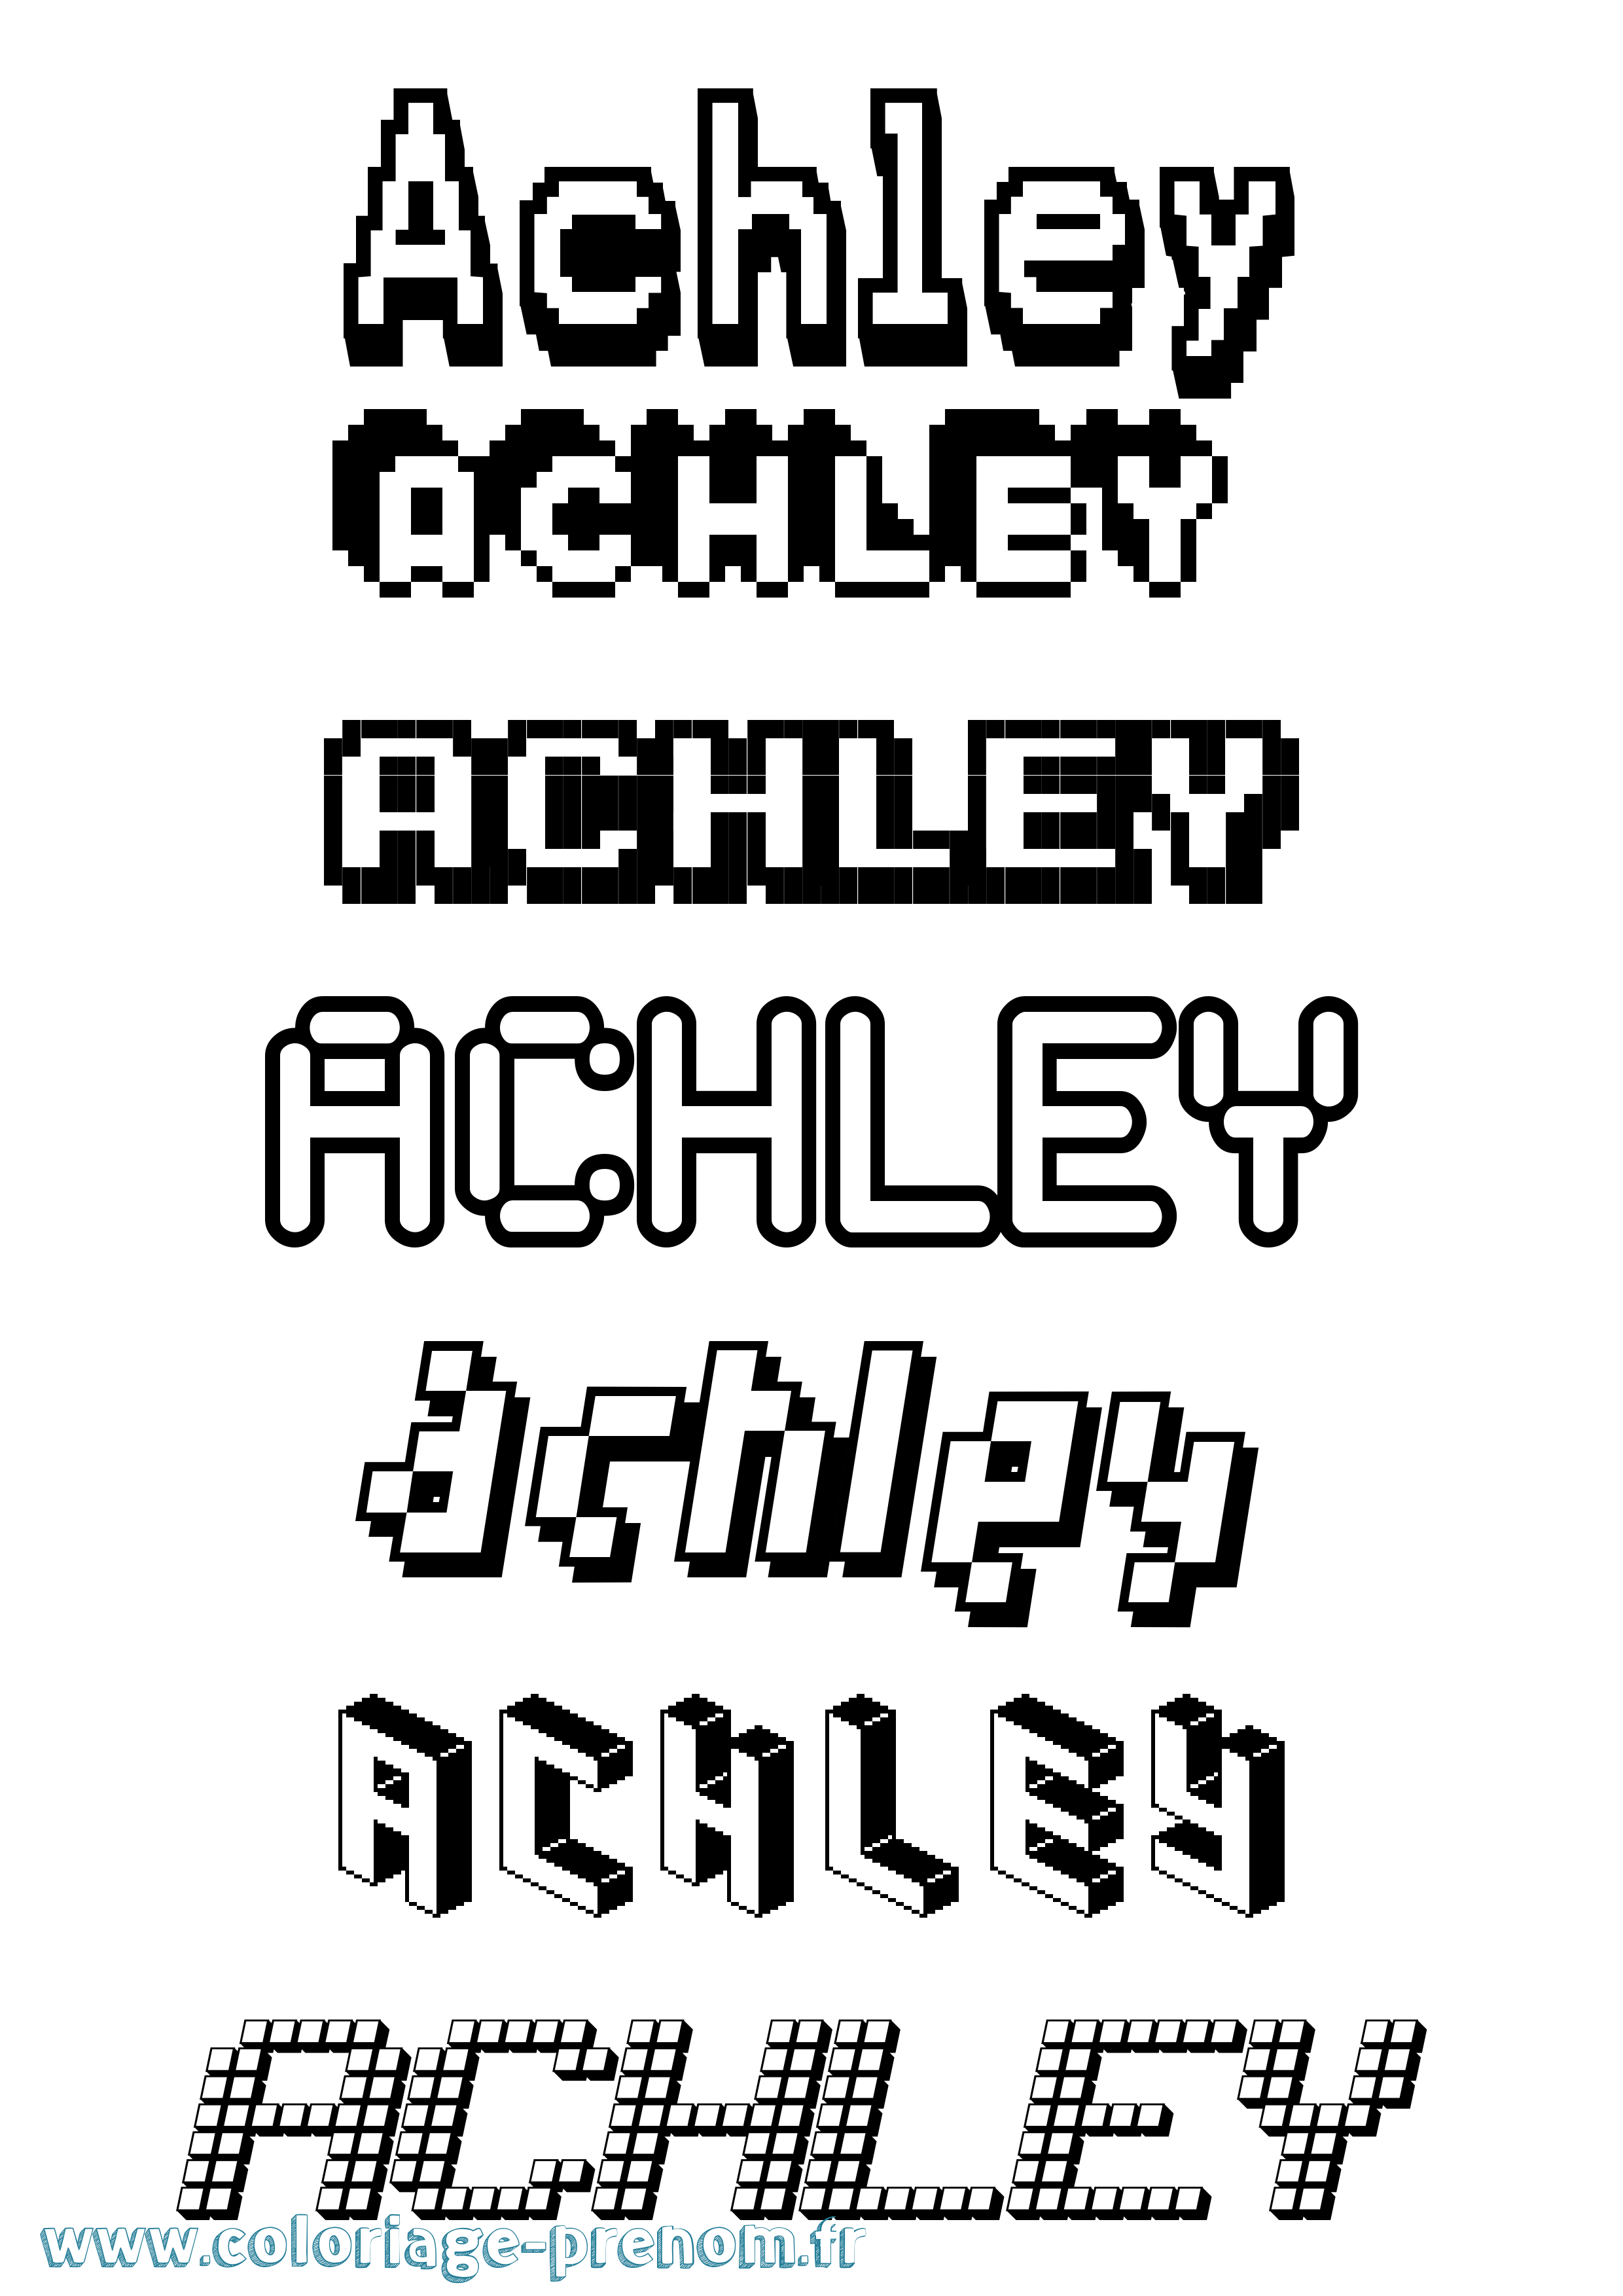 Coloriage prénom Achley Pixel